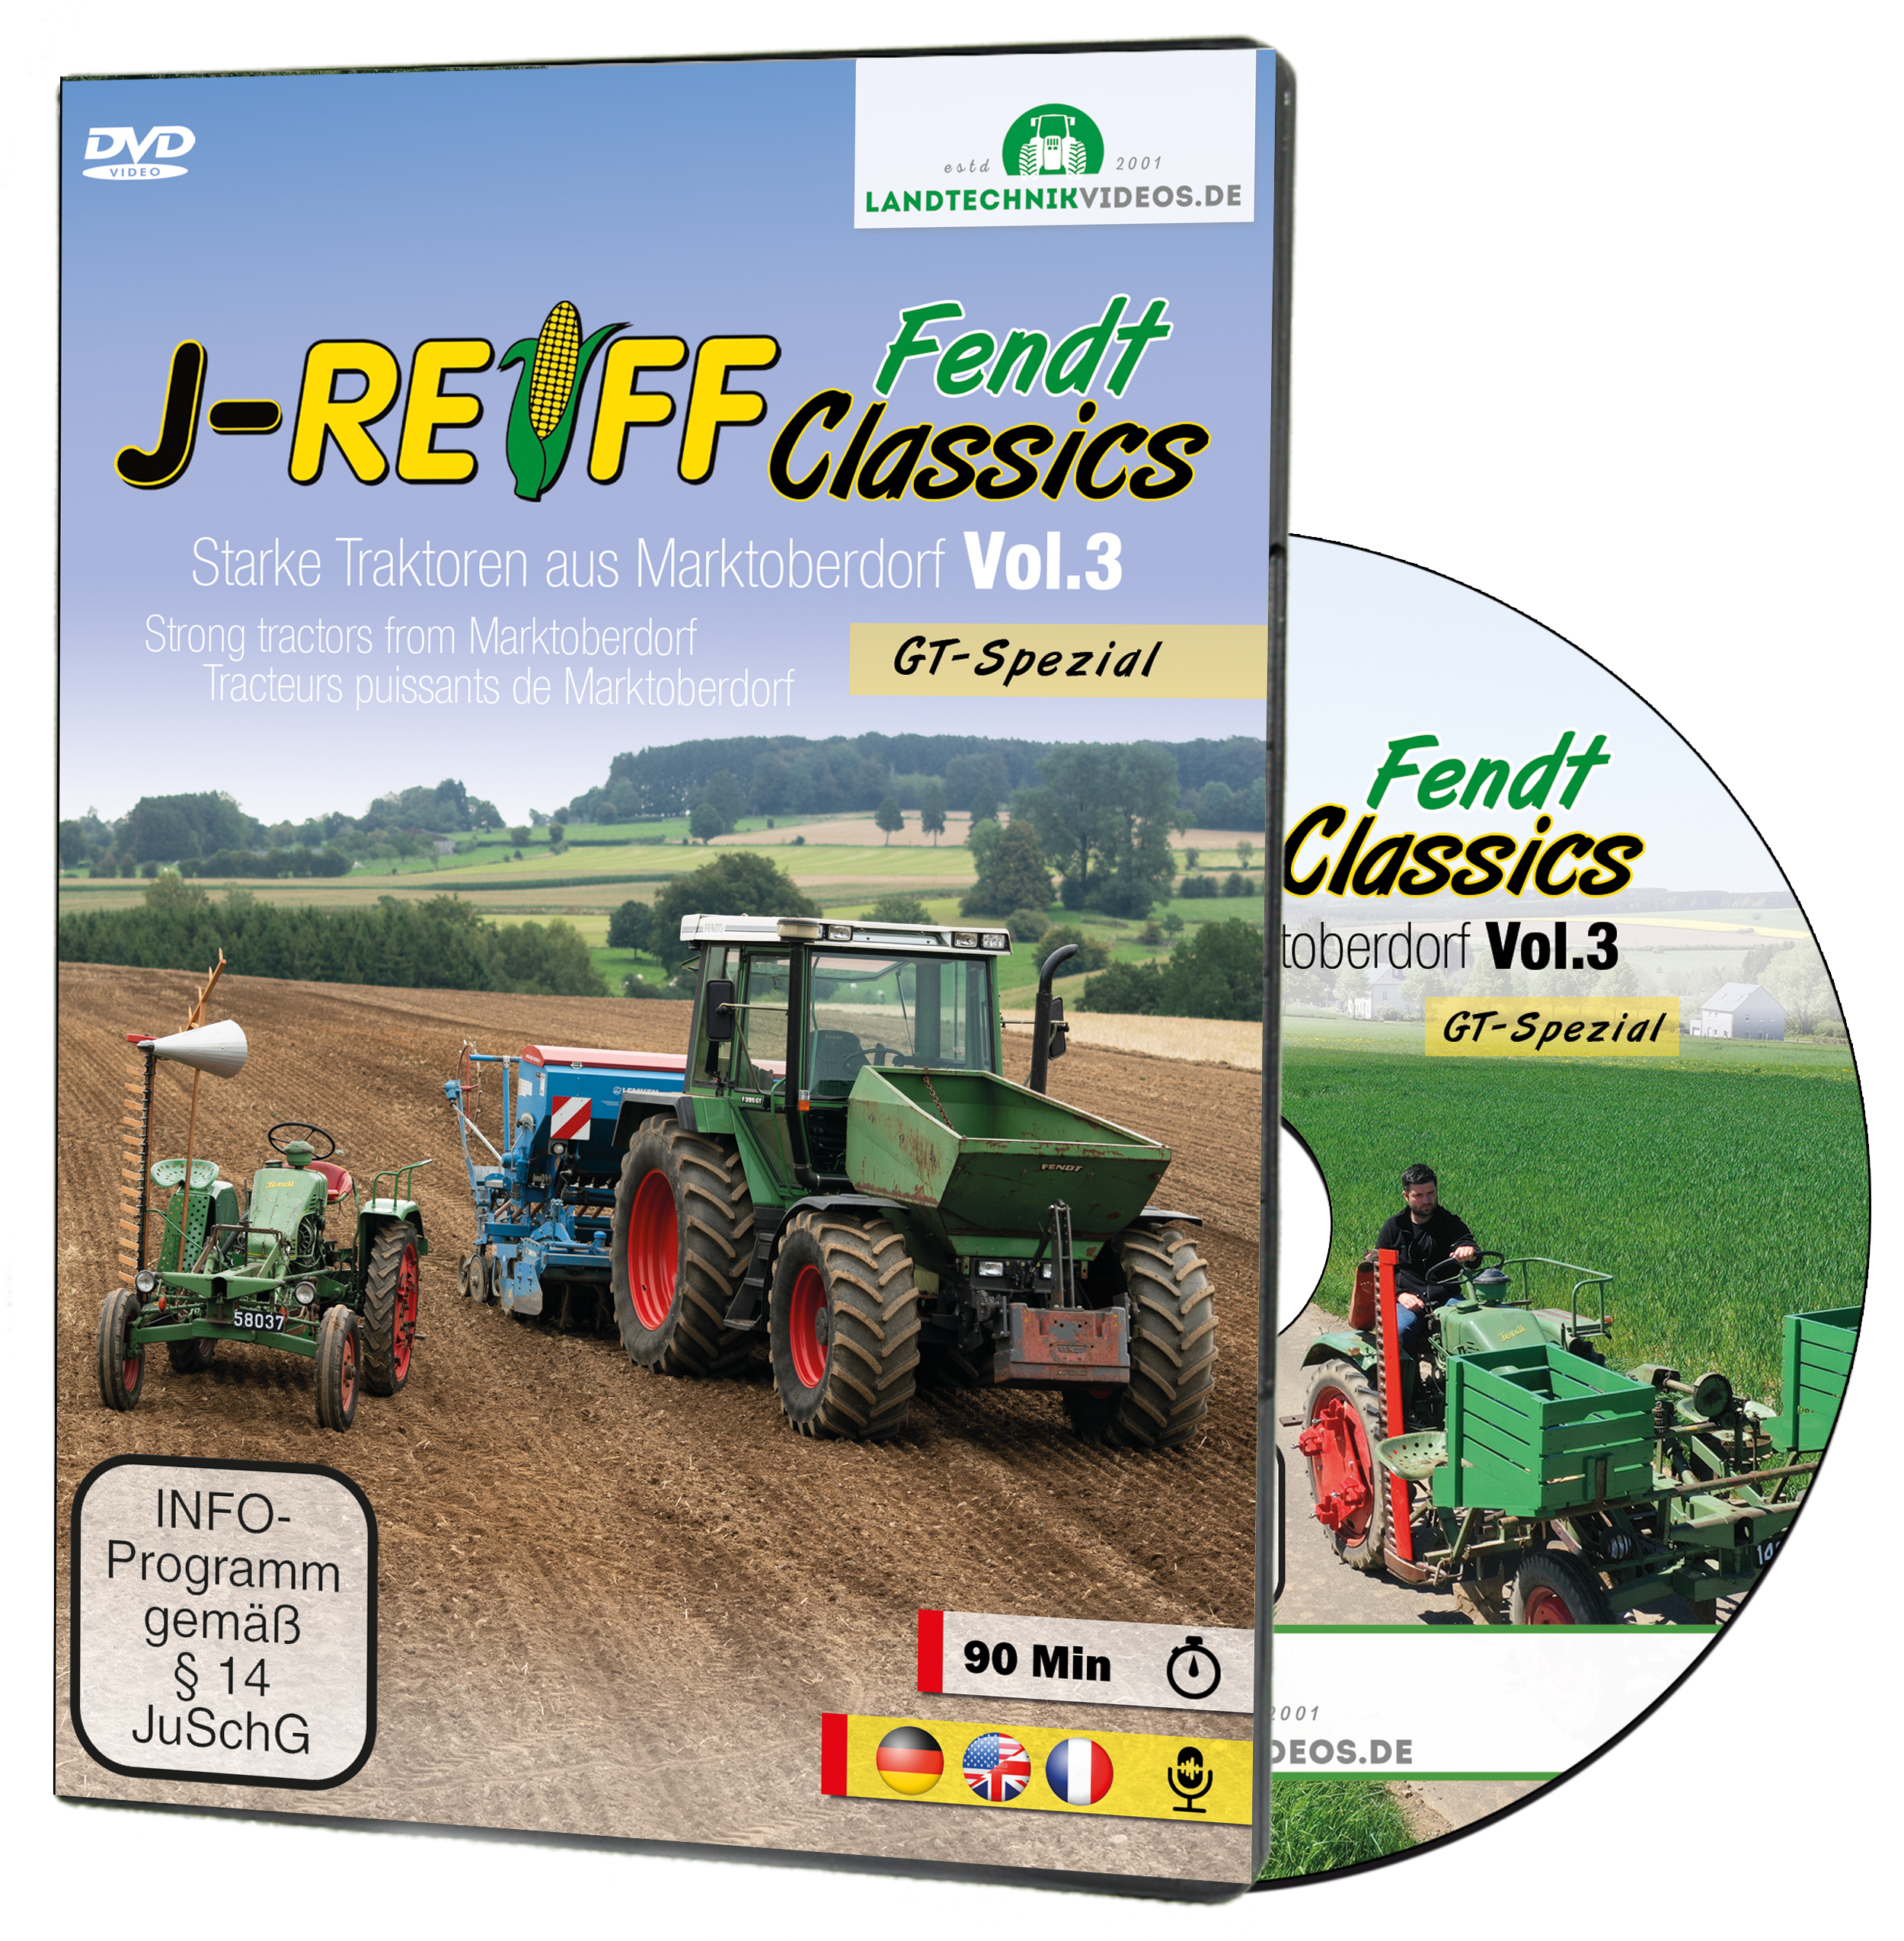 J-Reiff Fendt Classics Vol. 3 als DVD